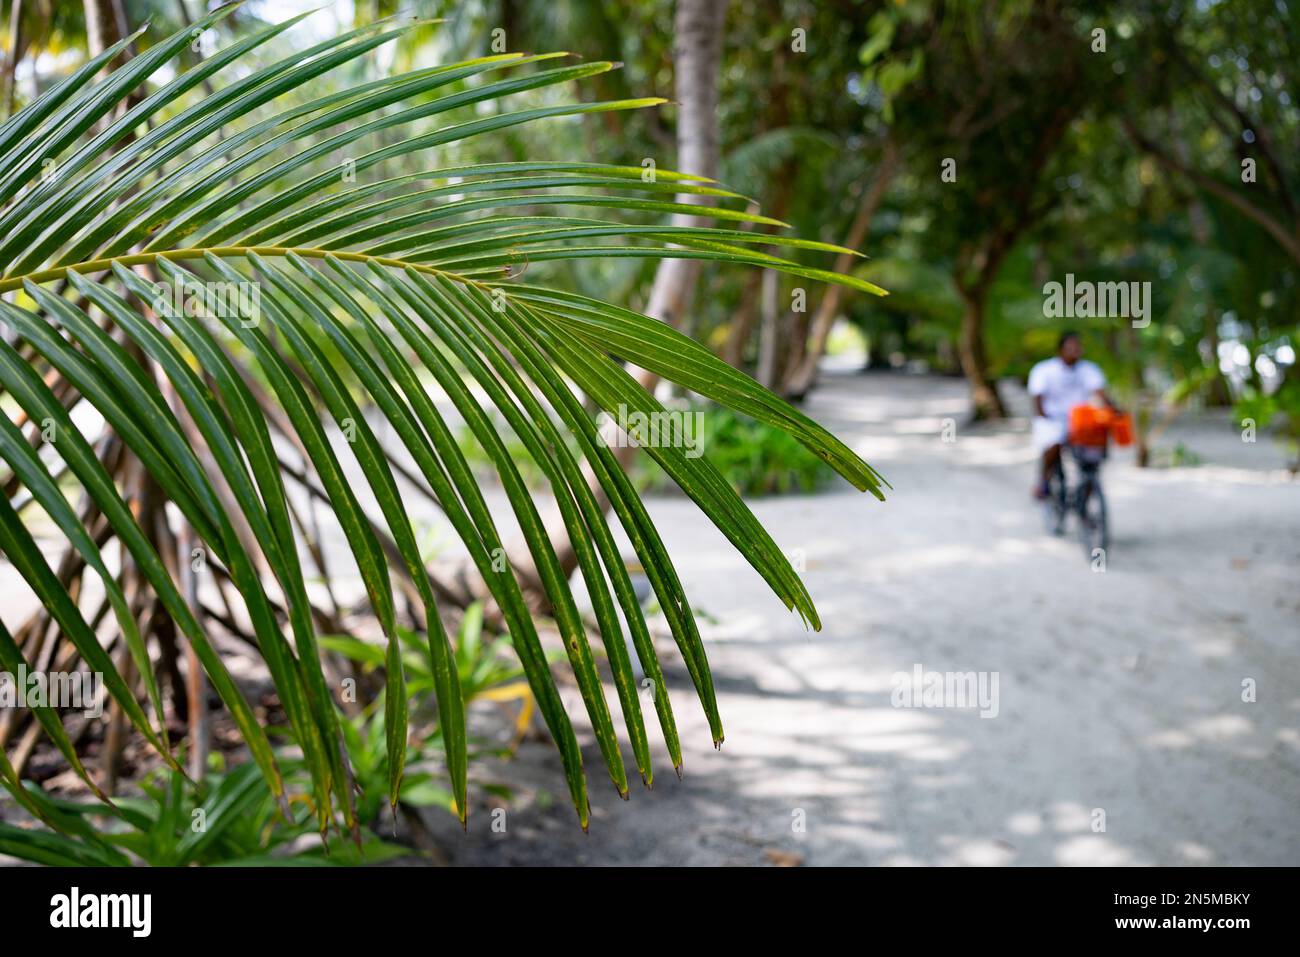 Vue sur les Maldives - feuilles de palmier et les gens dans le paysage, atoll de Rasdhoo, les îles tropicales des Maldives, Asie Banque D'Images